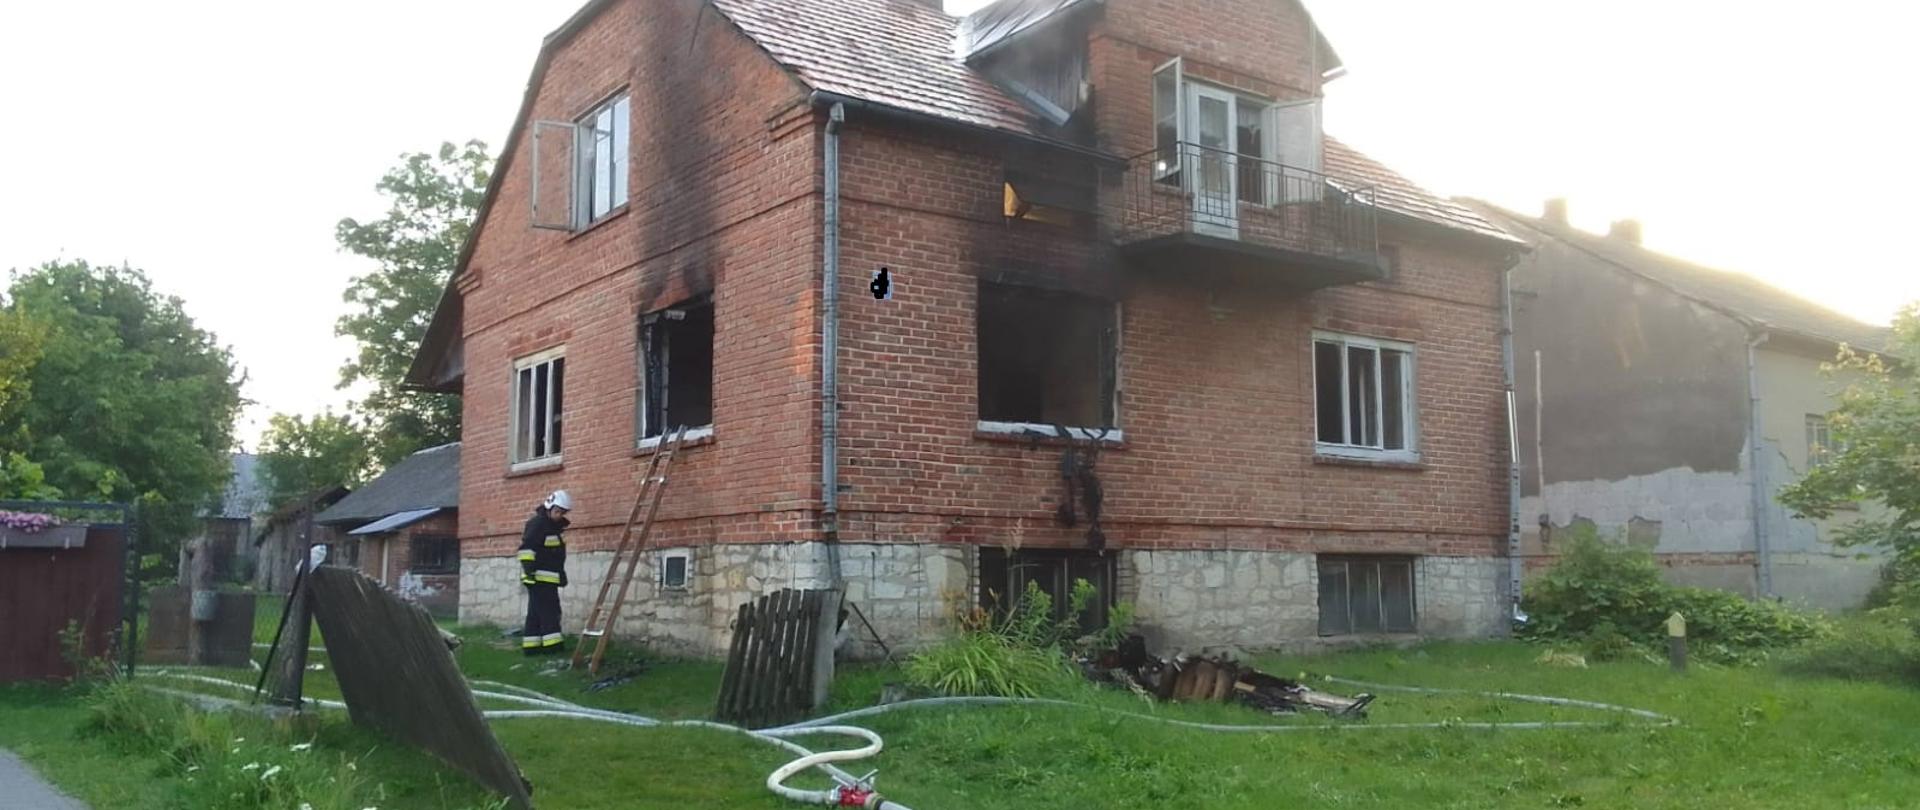 Zdjęcie przedstawia dom jednorodzinny wymurowany z cegły. Na budynku widoczne są ślady pożaru. Dom nie posiada dwóch okien.